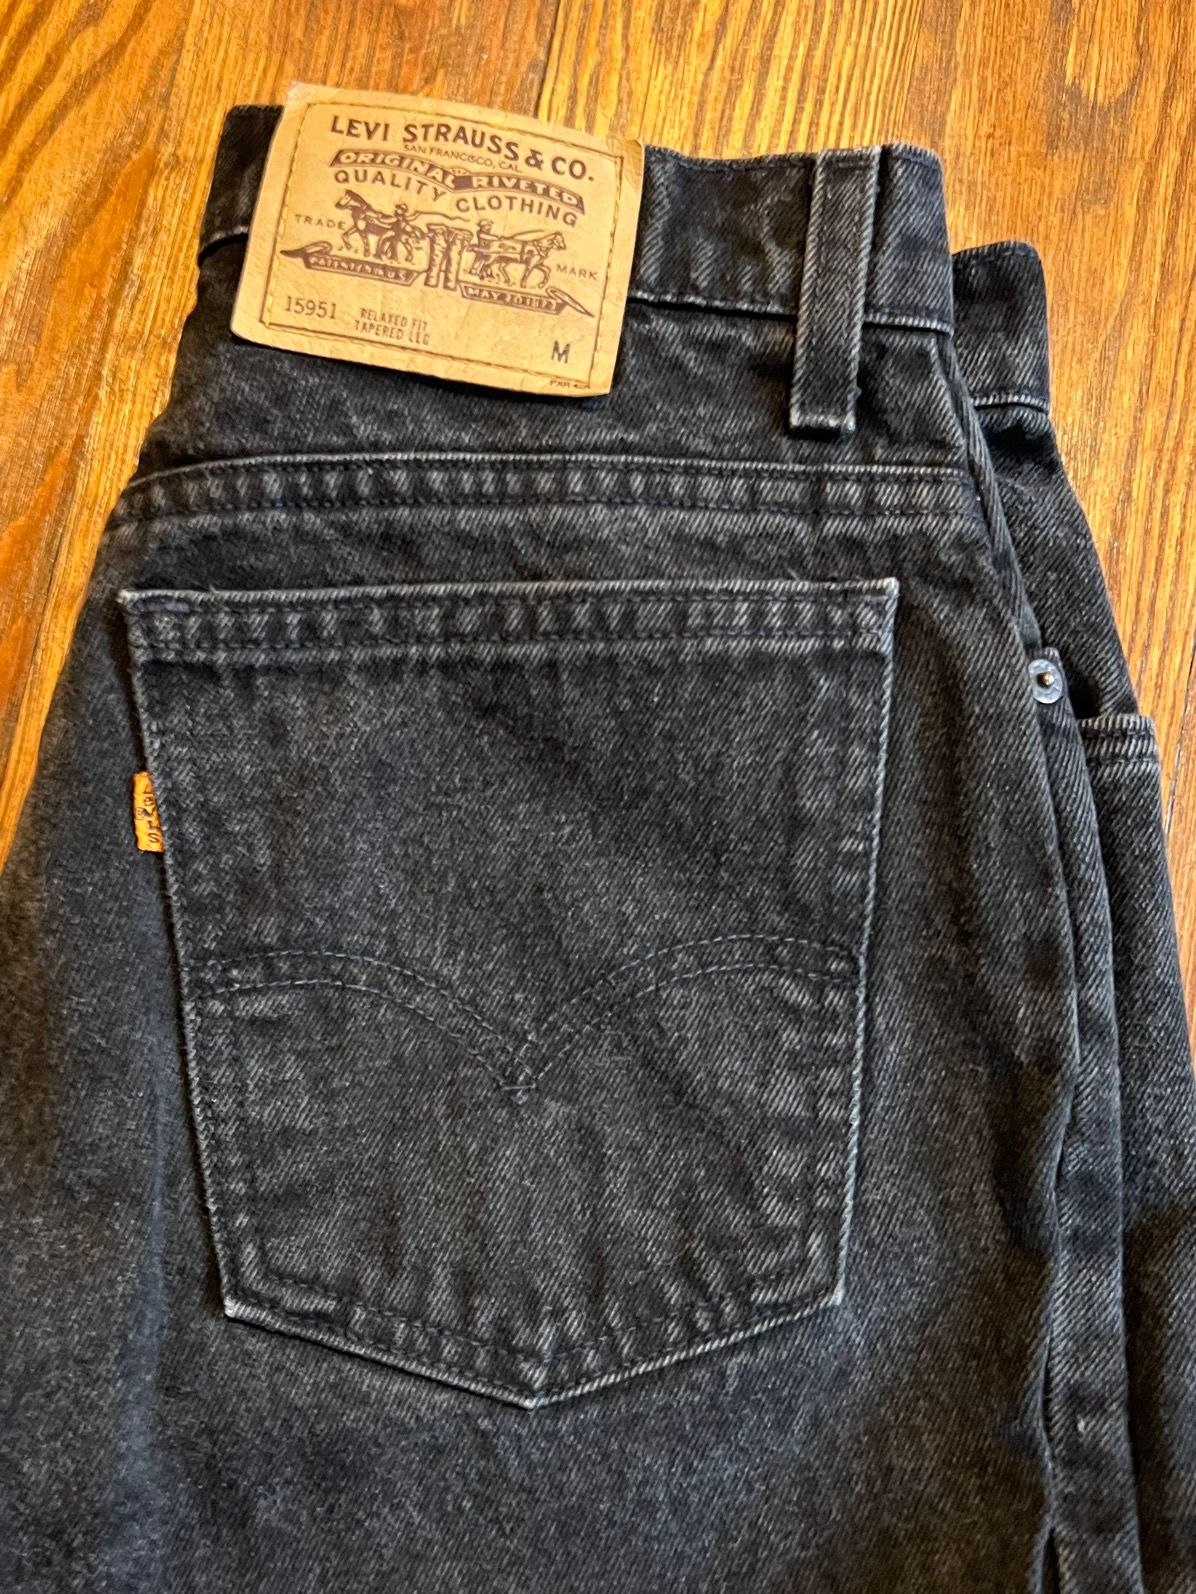 Vintage Vintage Levi’s 951 Black Denim Jeans Made in USA Size US 29 - 2 Preview